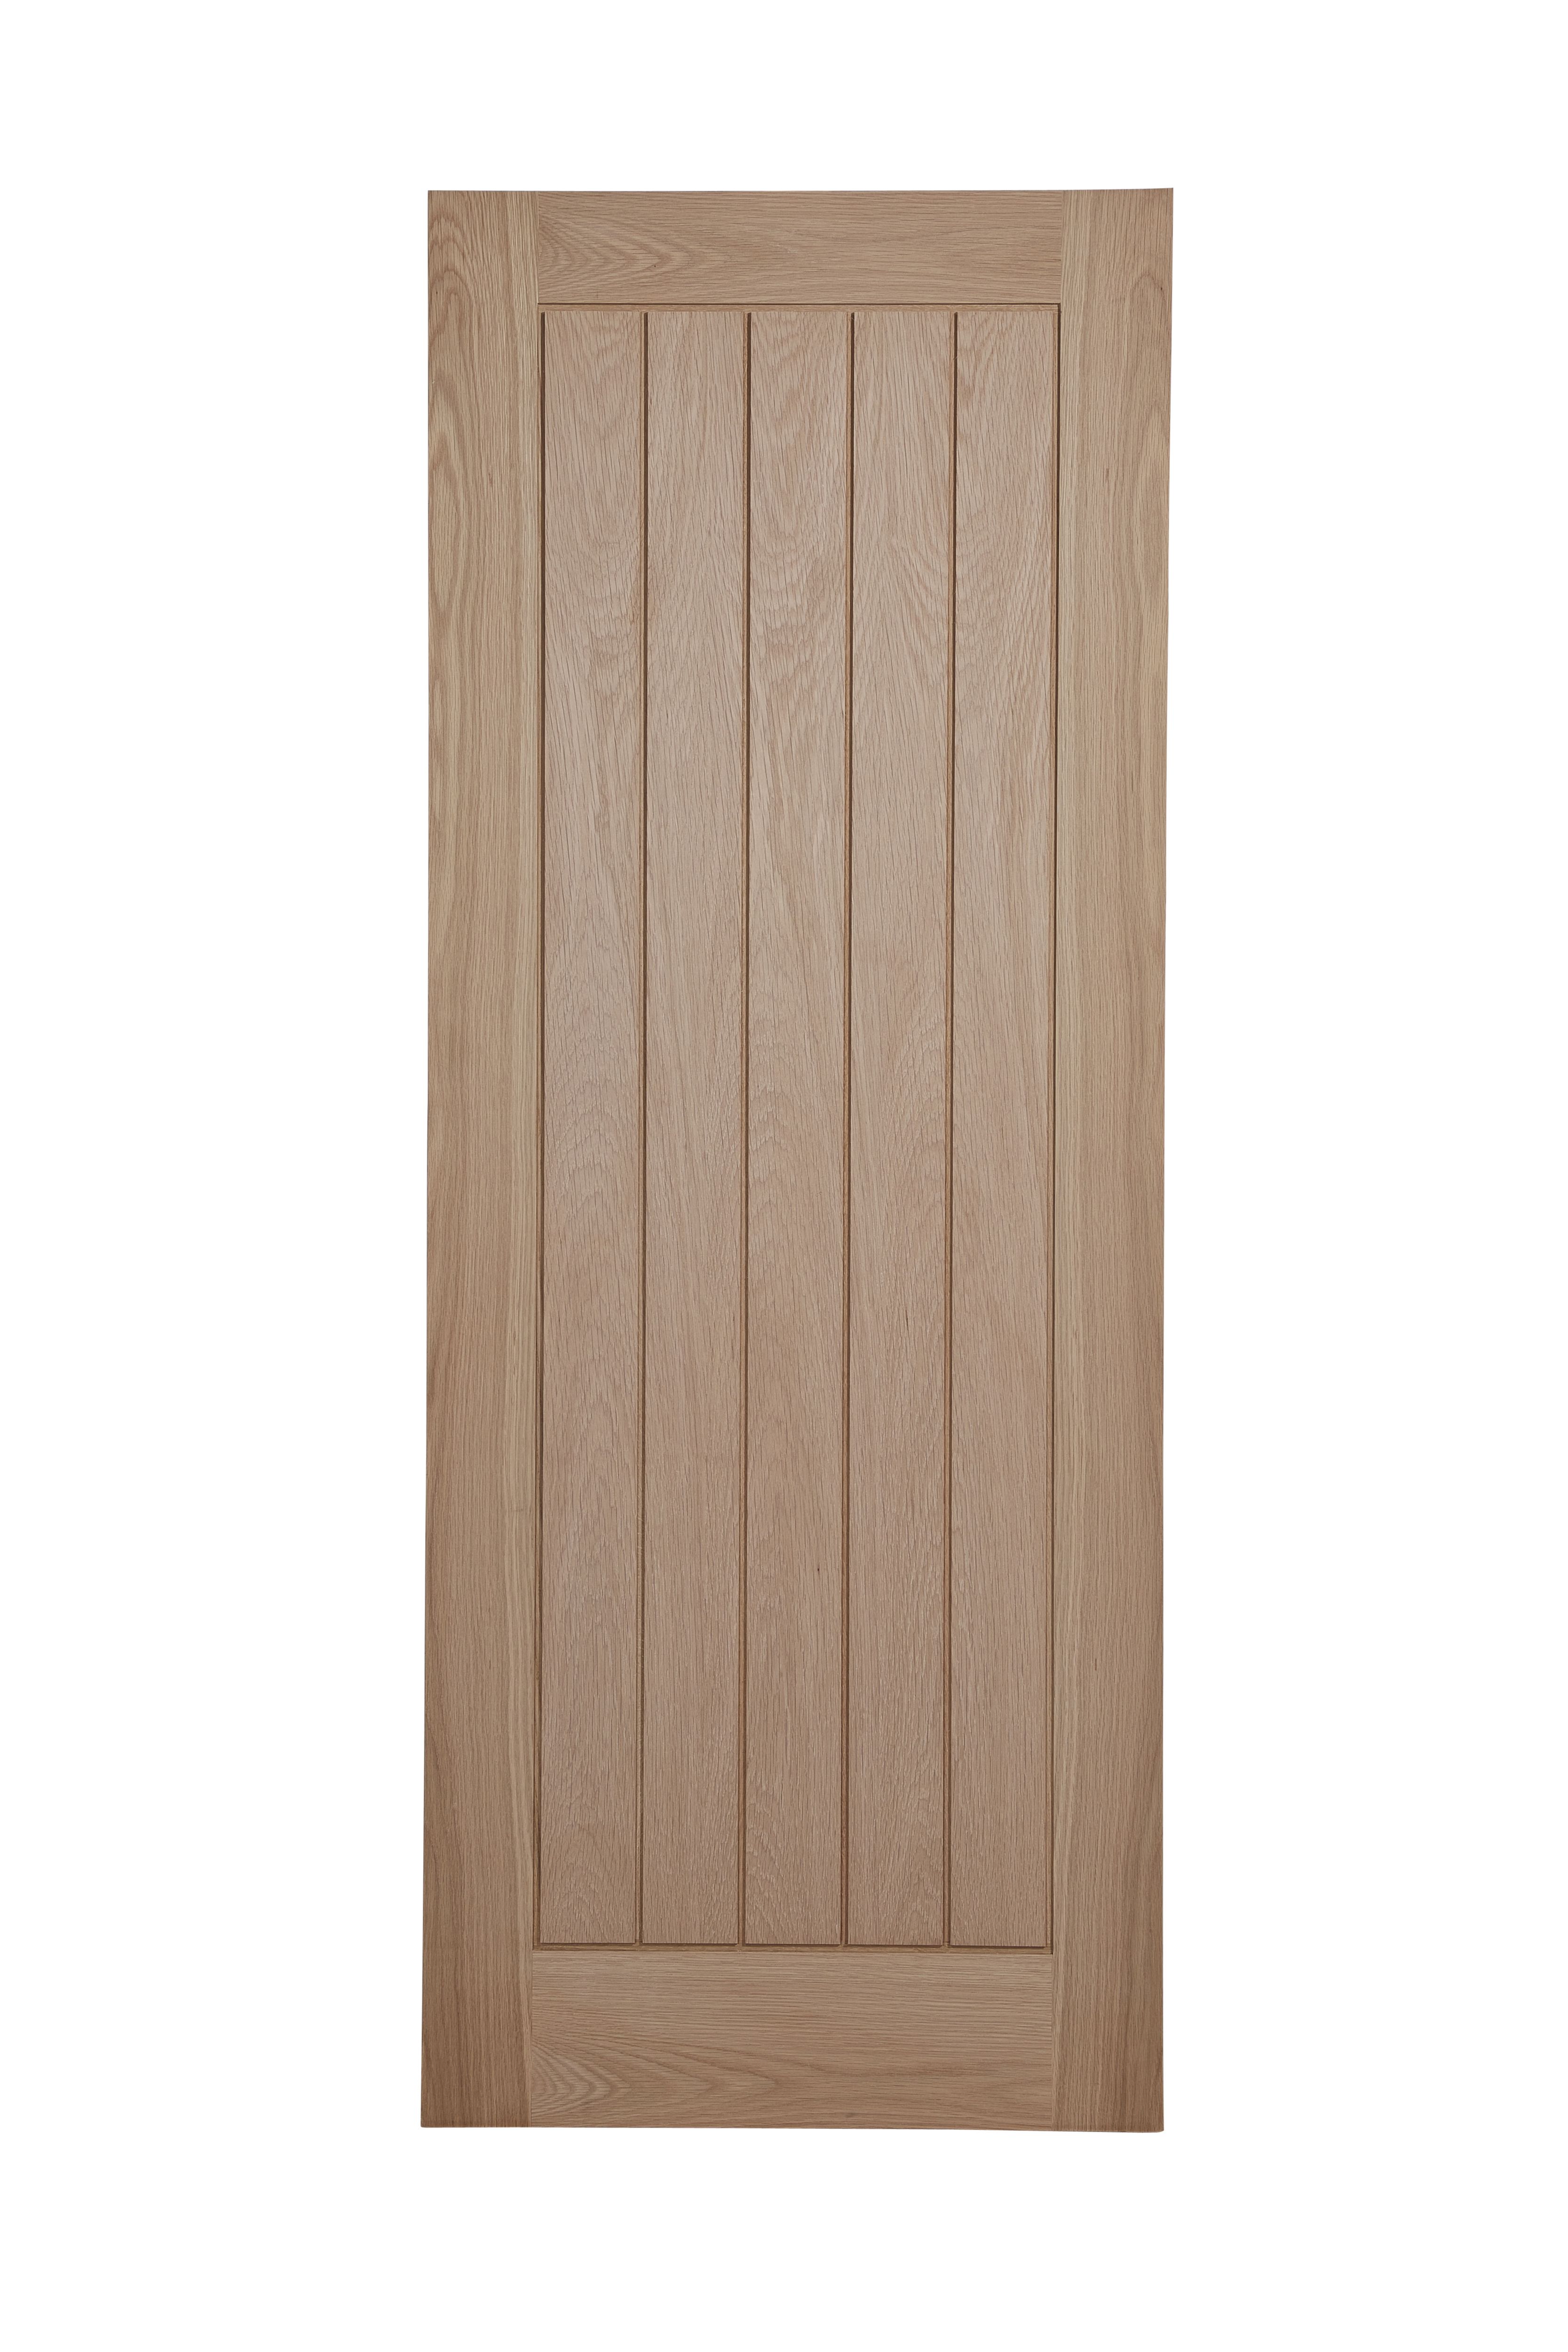 Unglazed Cottage Oak veneer Internal Door, (H)1981mm (W)686mm (T)44mm